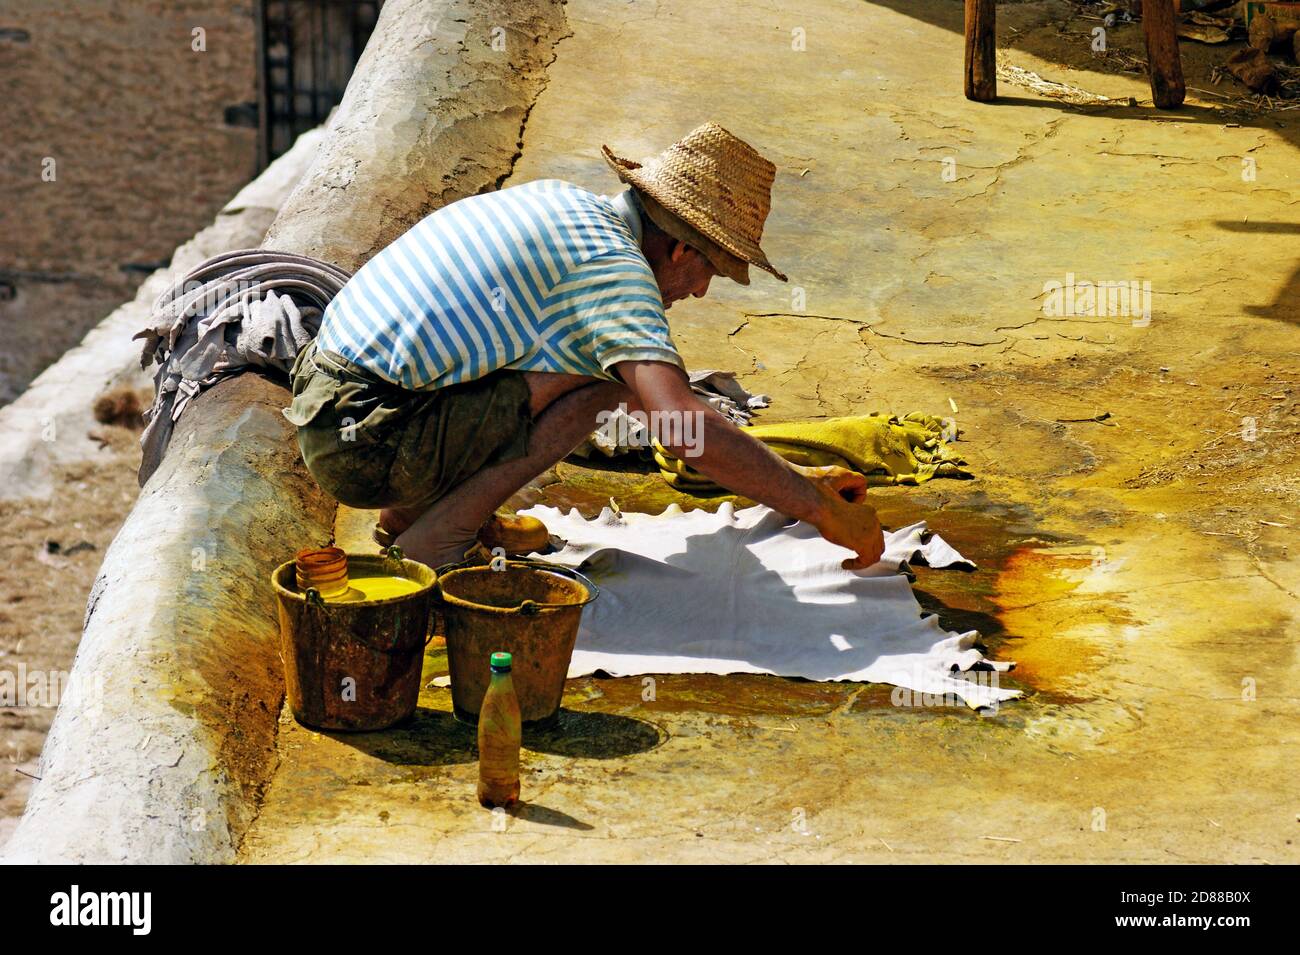 Un vecchio uomo marocchino tintura a mano la borra di un colore giallo brillante come parte del processo di produzione della pelle presso la conceria Chouara a Fez, Marocco. Foto Stock